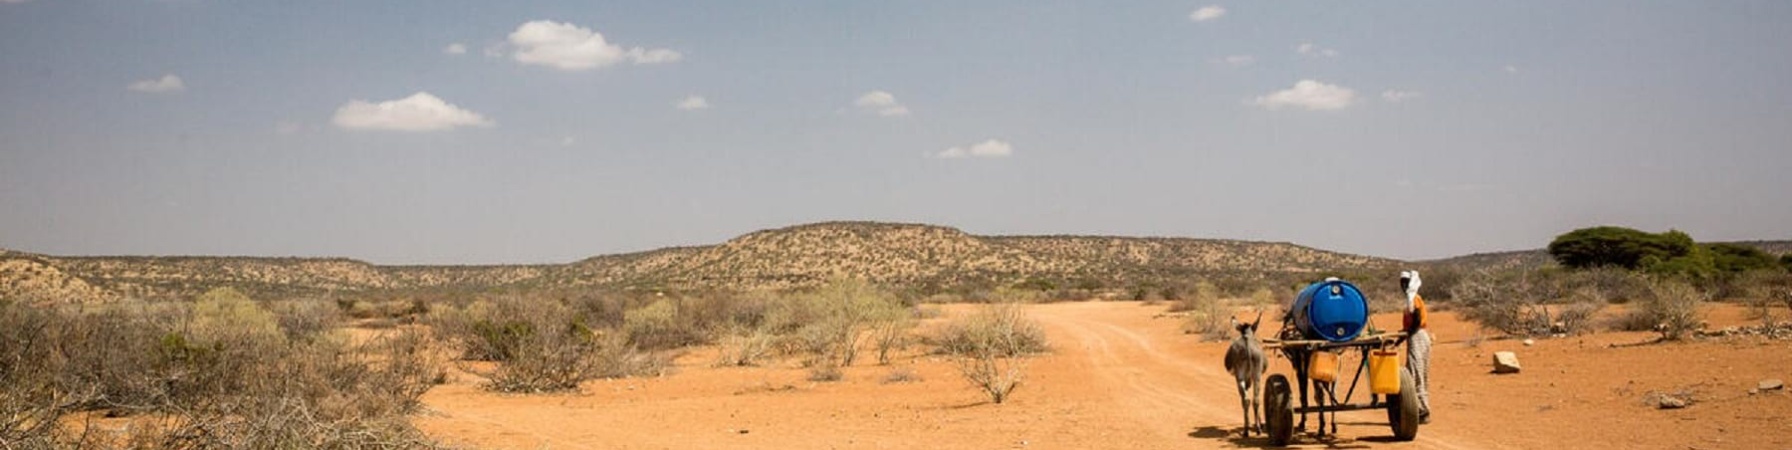 visione di terreno secco e arido con asino che trasporta bidoni di acqua